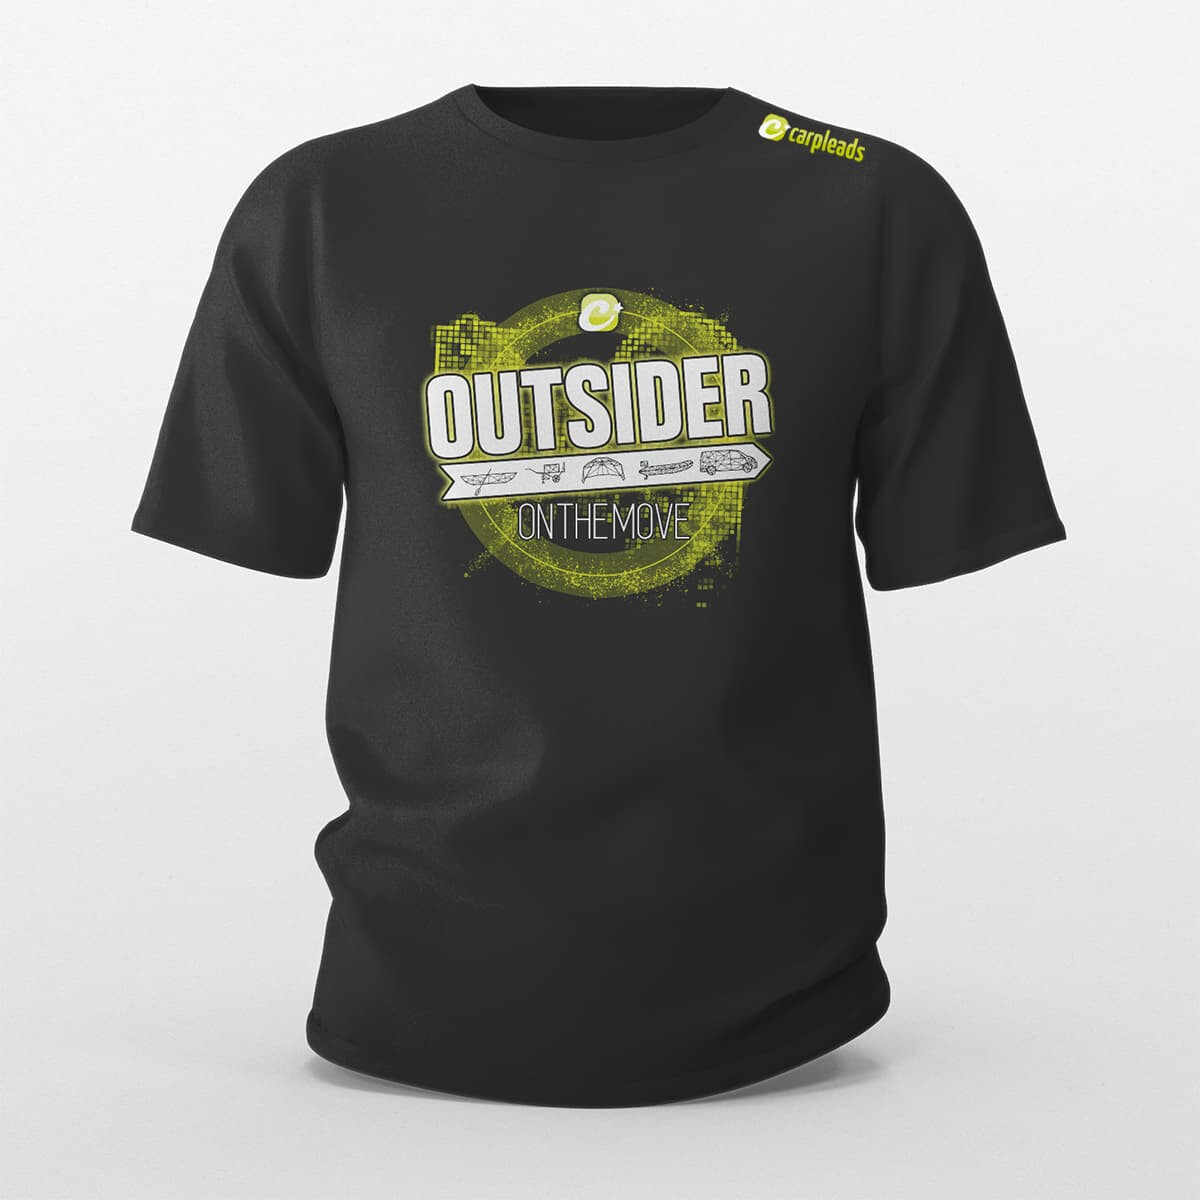 Carpleads "OUTSIDER" T-Shirt 2024 - 3XL